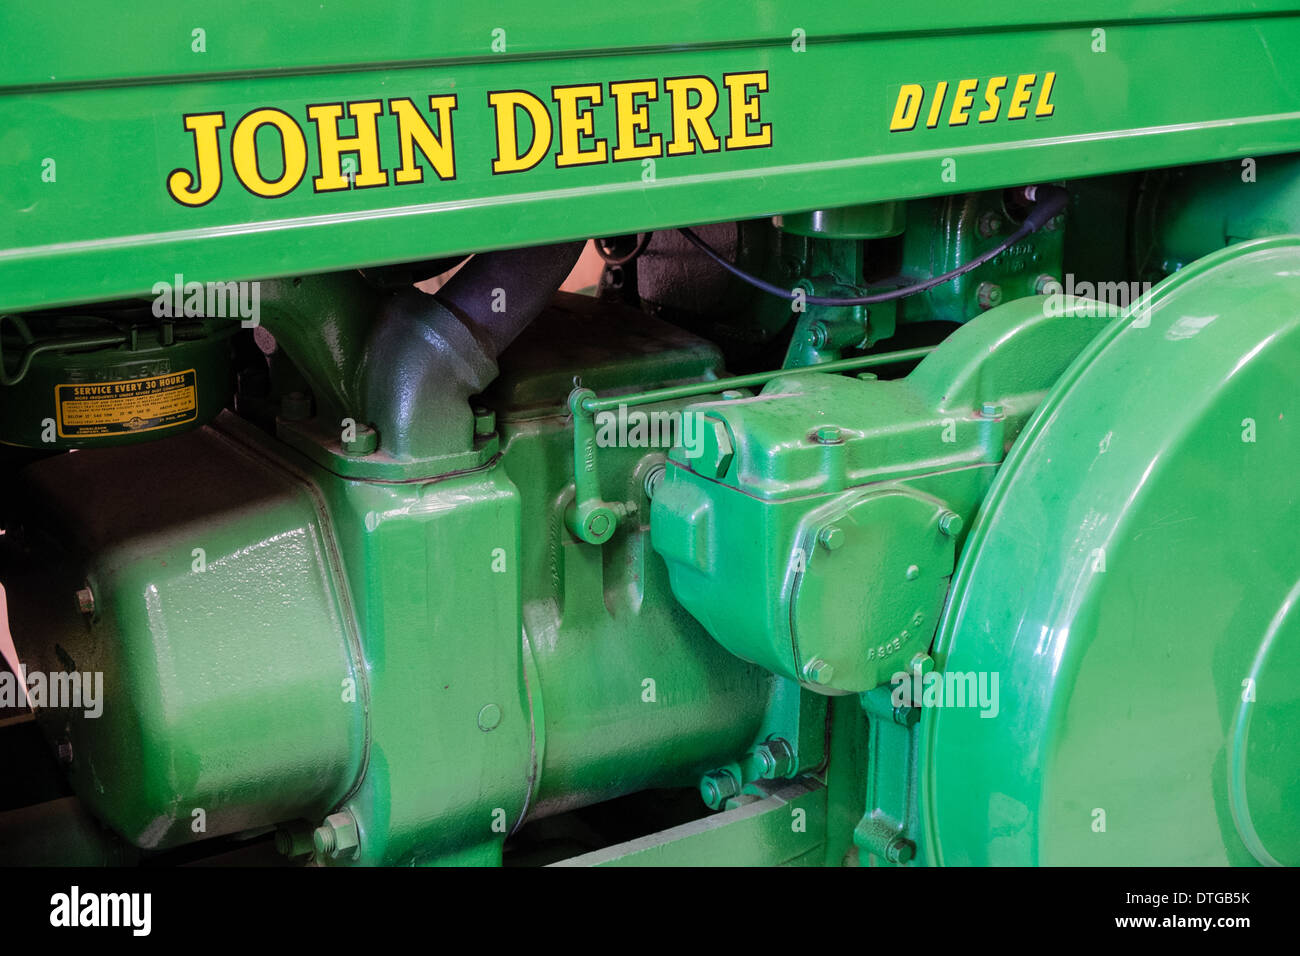 john deere service tractor engine